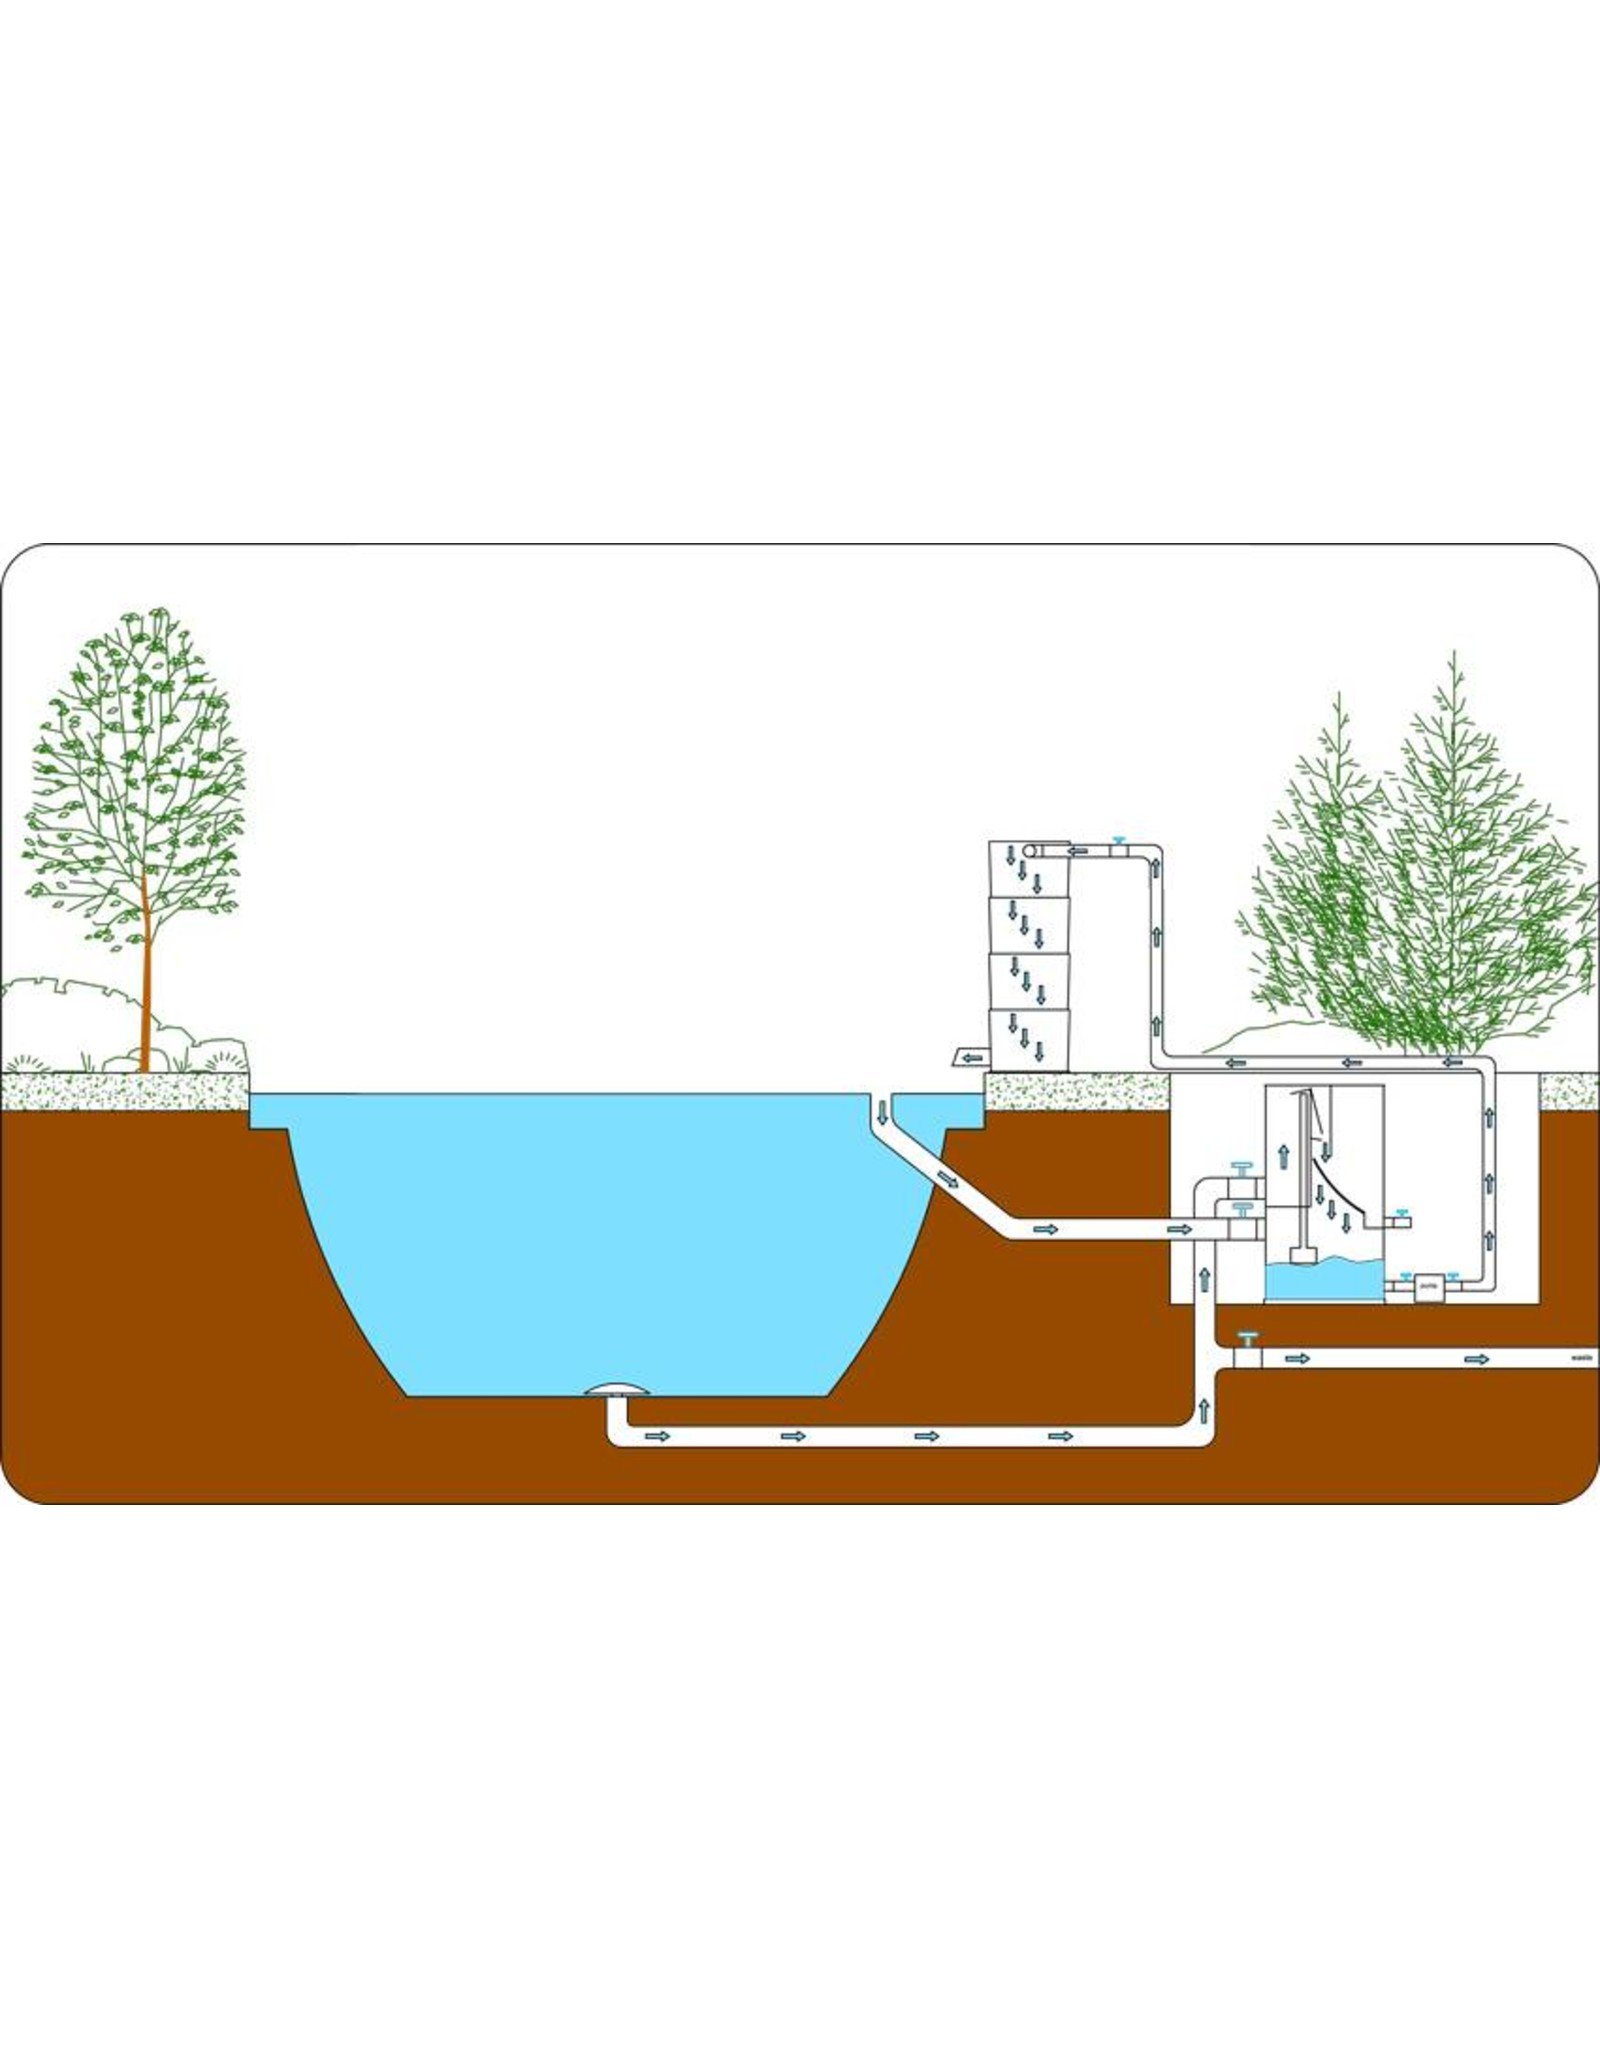 Пруд уходит вода. Схема биофильтра для пруда. Система фильтрации пруда схема. Схема фильтрации воды в УЗВ. Фильтры для очистки искусственного водоема.